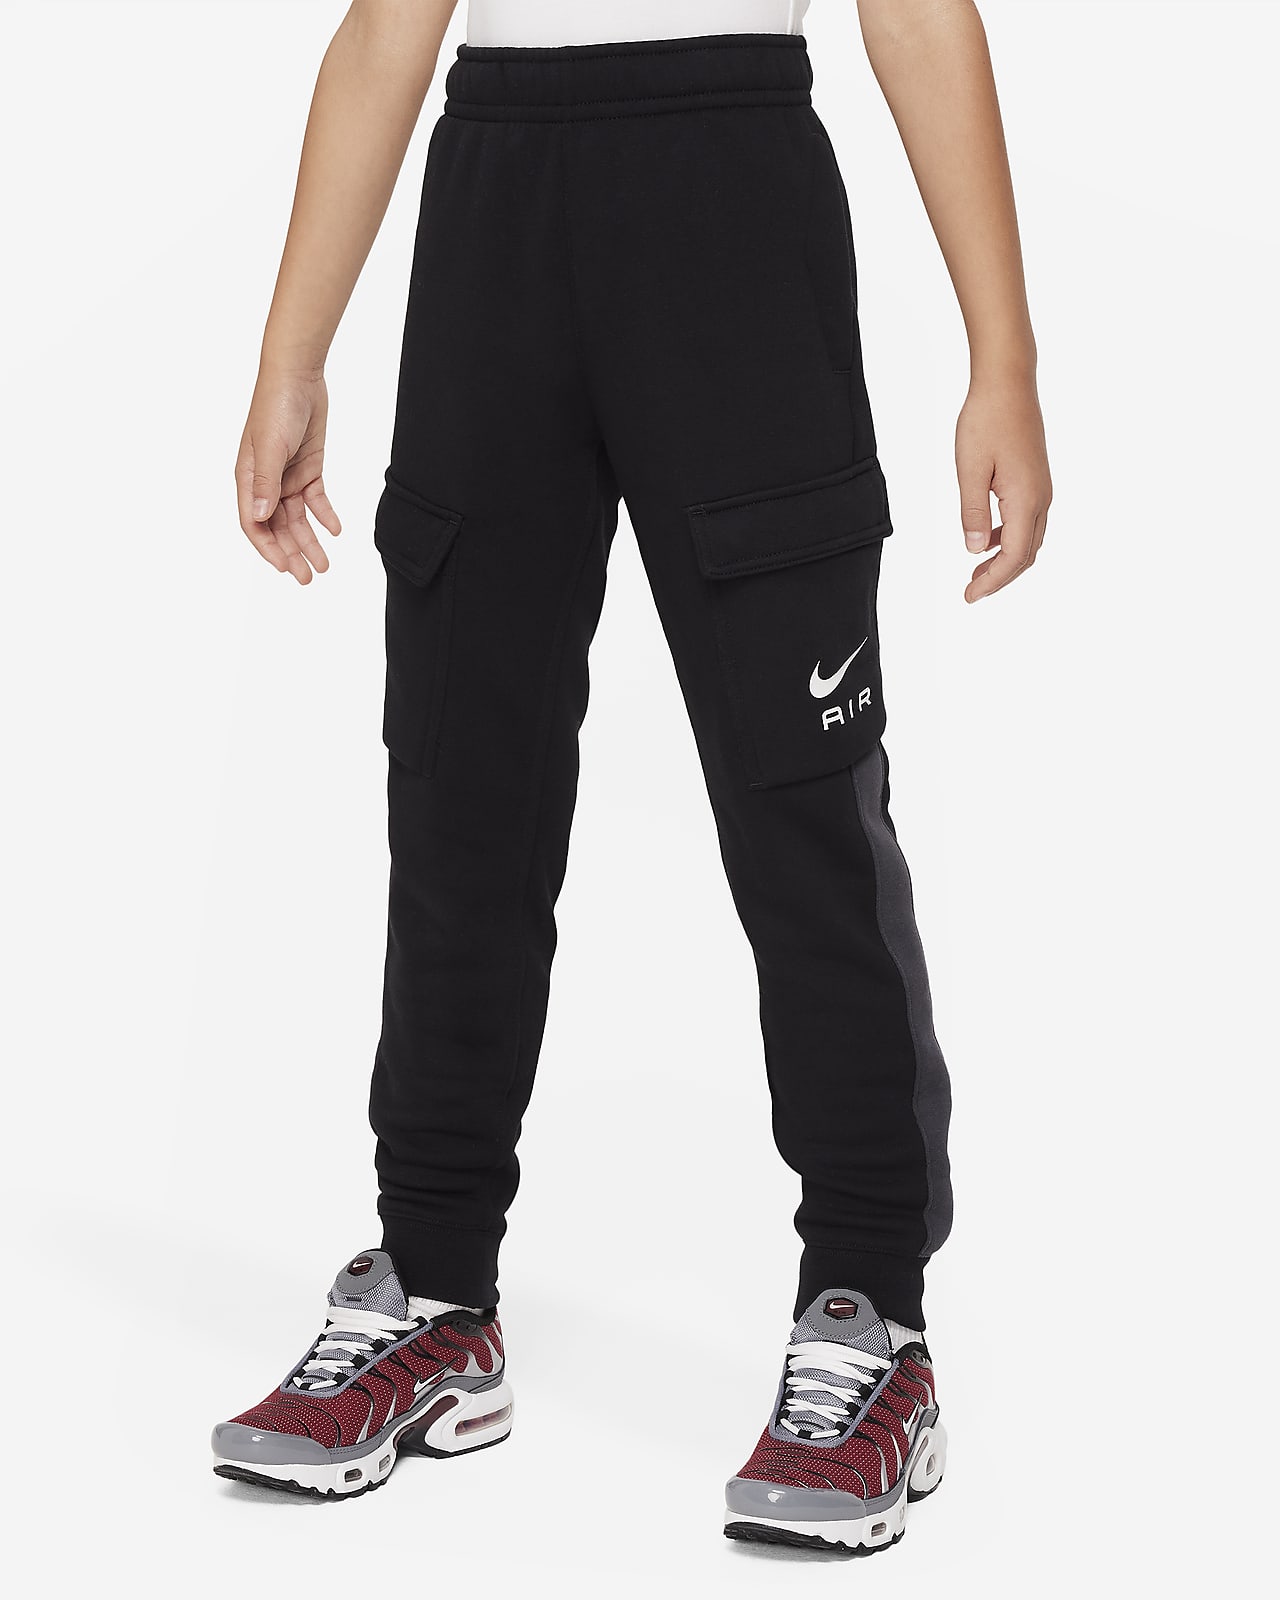 Pantalon cargo en tissu Fleece Nike Air pour ado